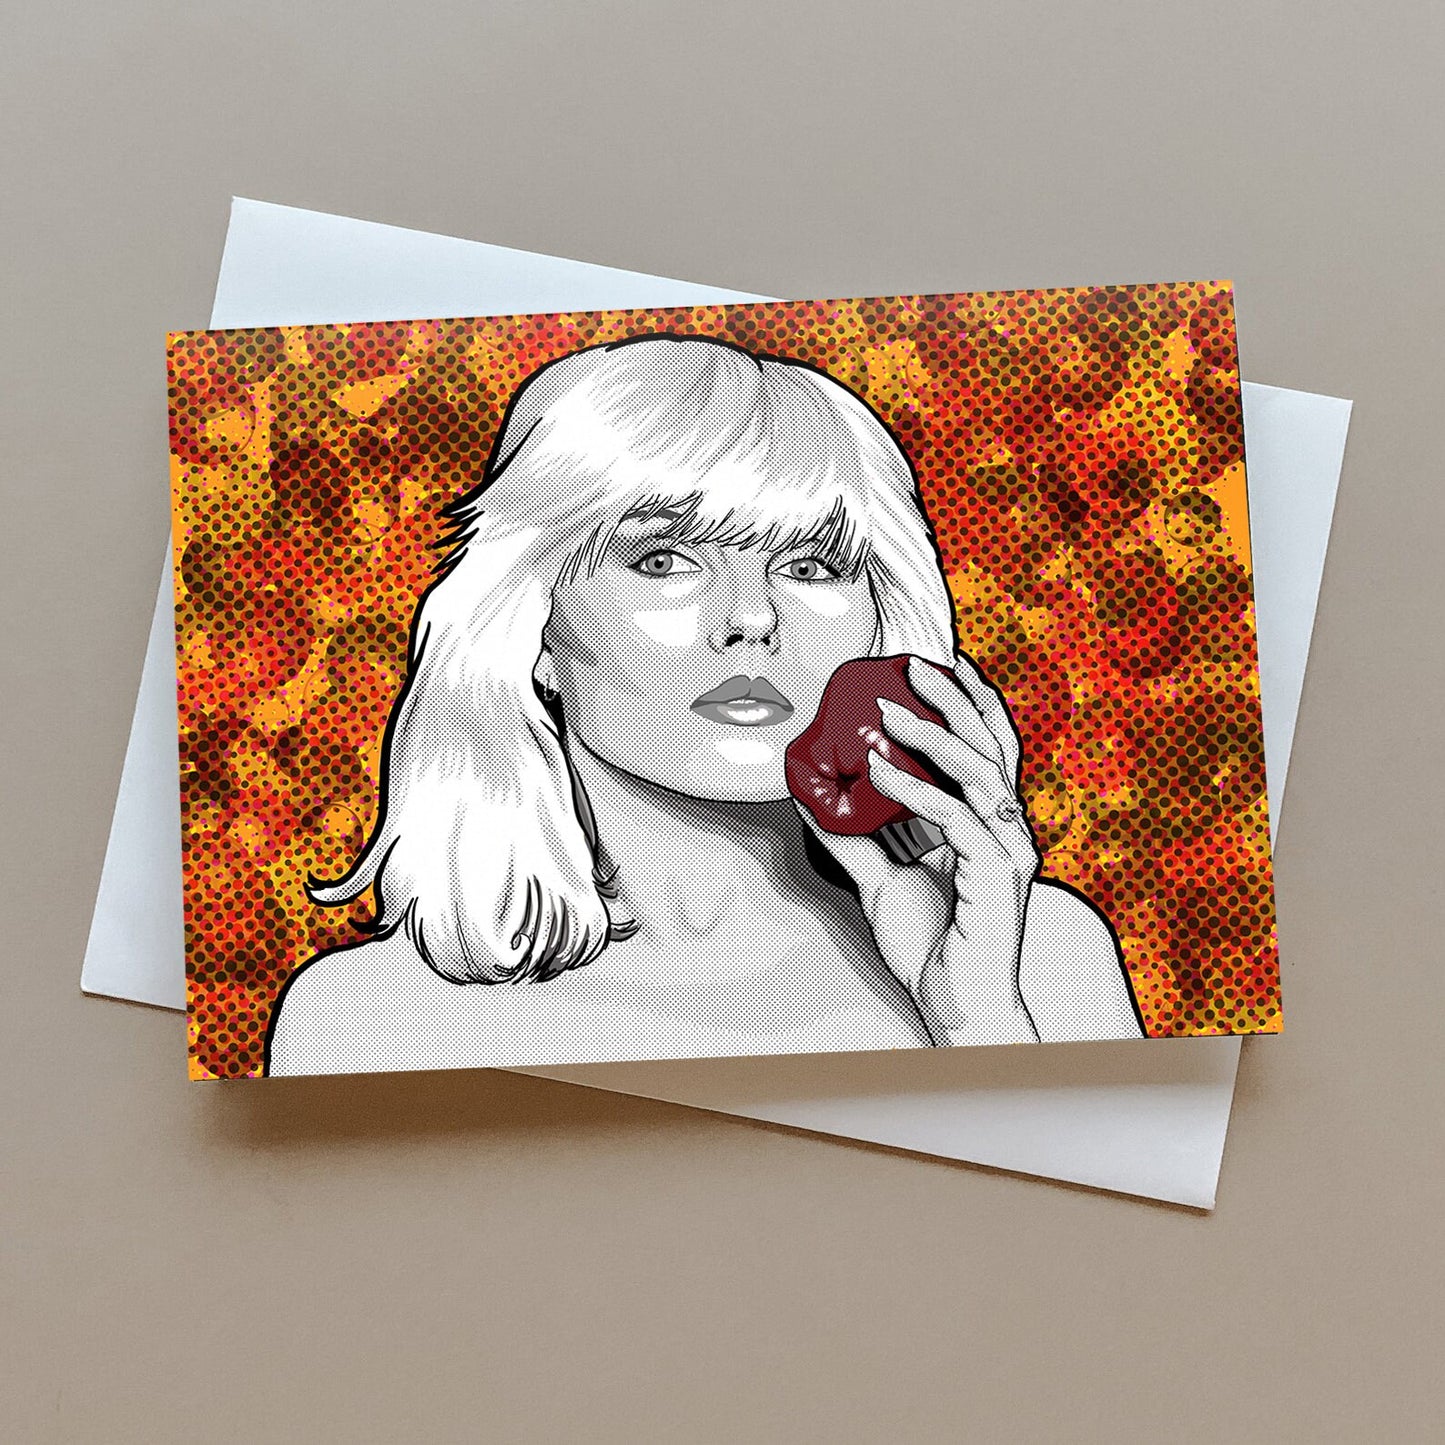 Debbie Harry of Blondie greeting card, Birthday Card, Blondie Retro Card, Debbie Harry Gift, New Wave card, Punk rock card, Pop art card